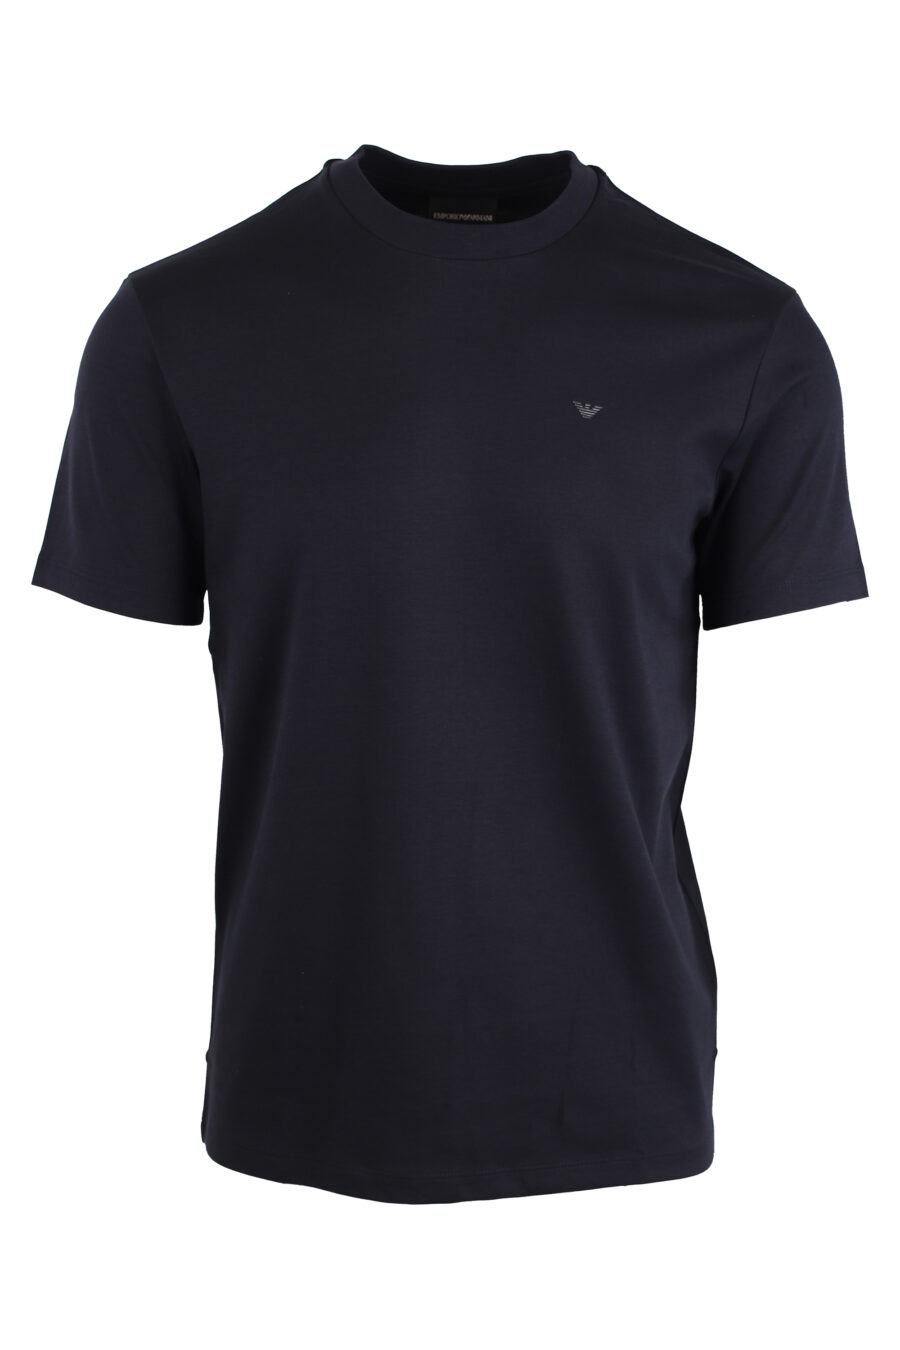 Camiseta azul oscura con minilogo negro - IMG 4264